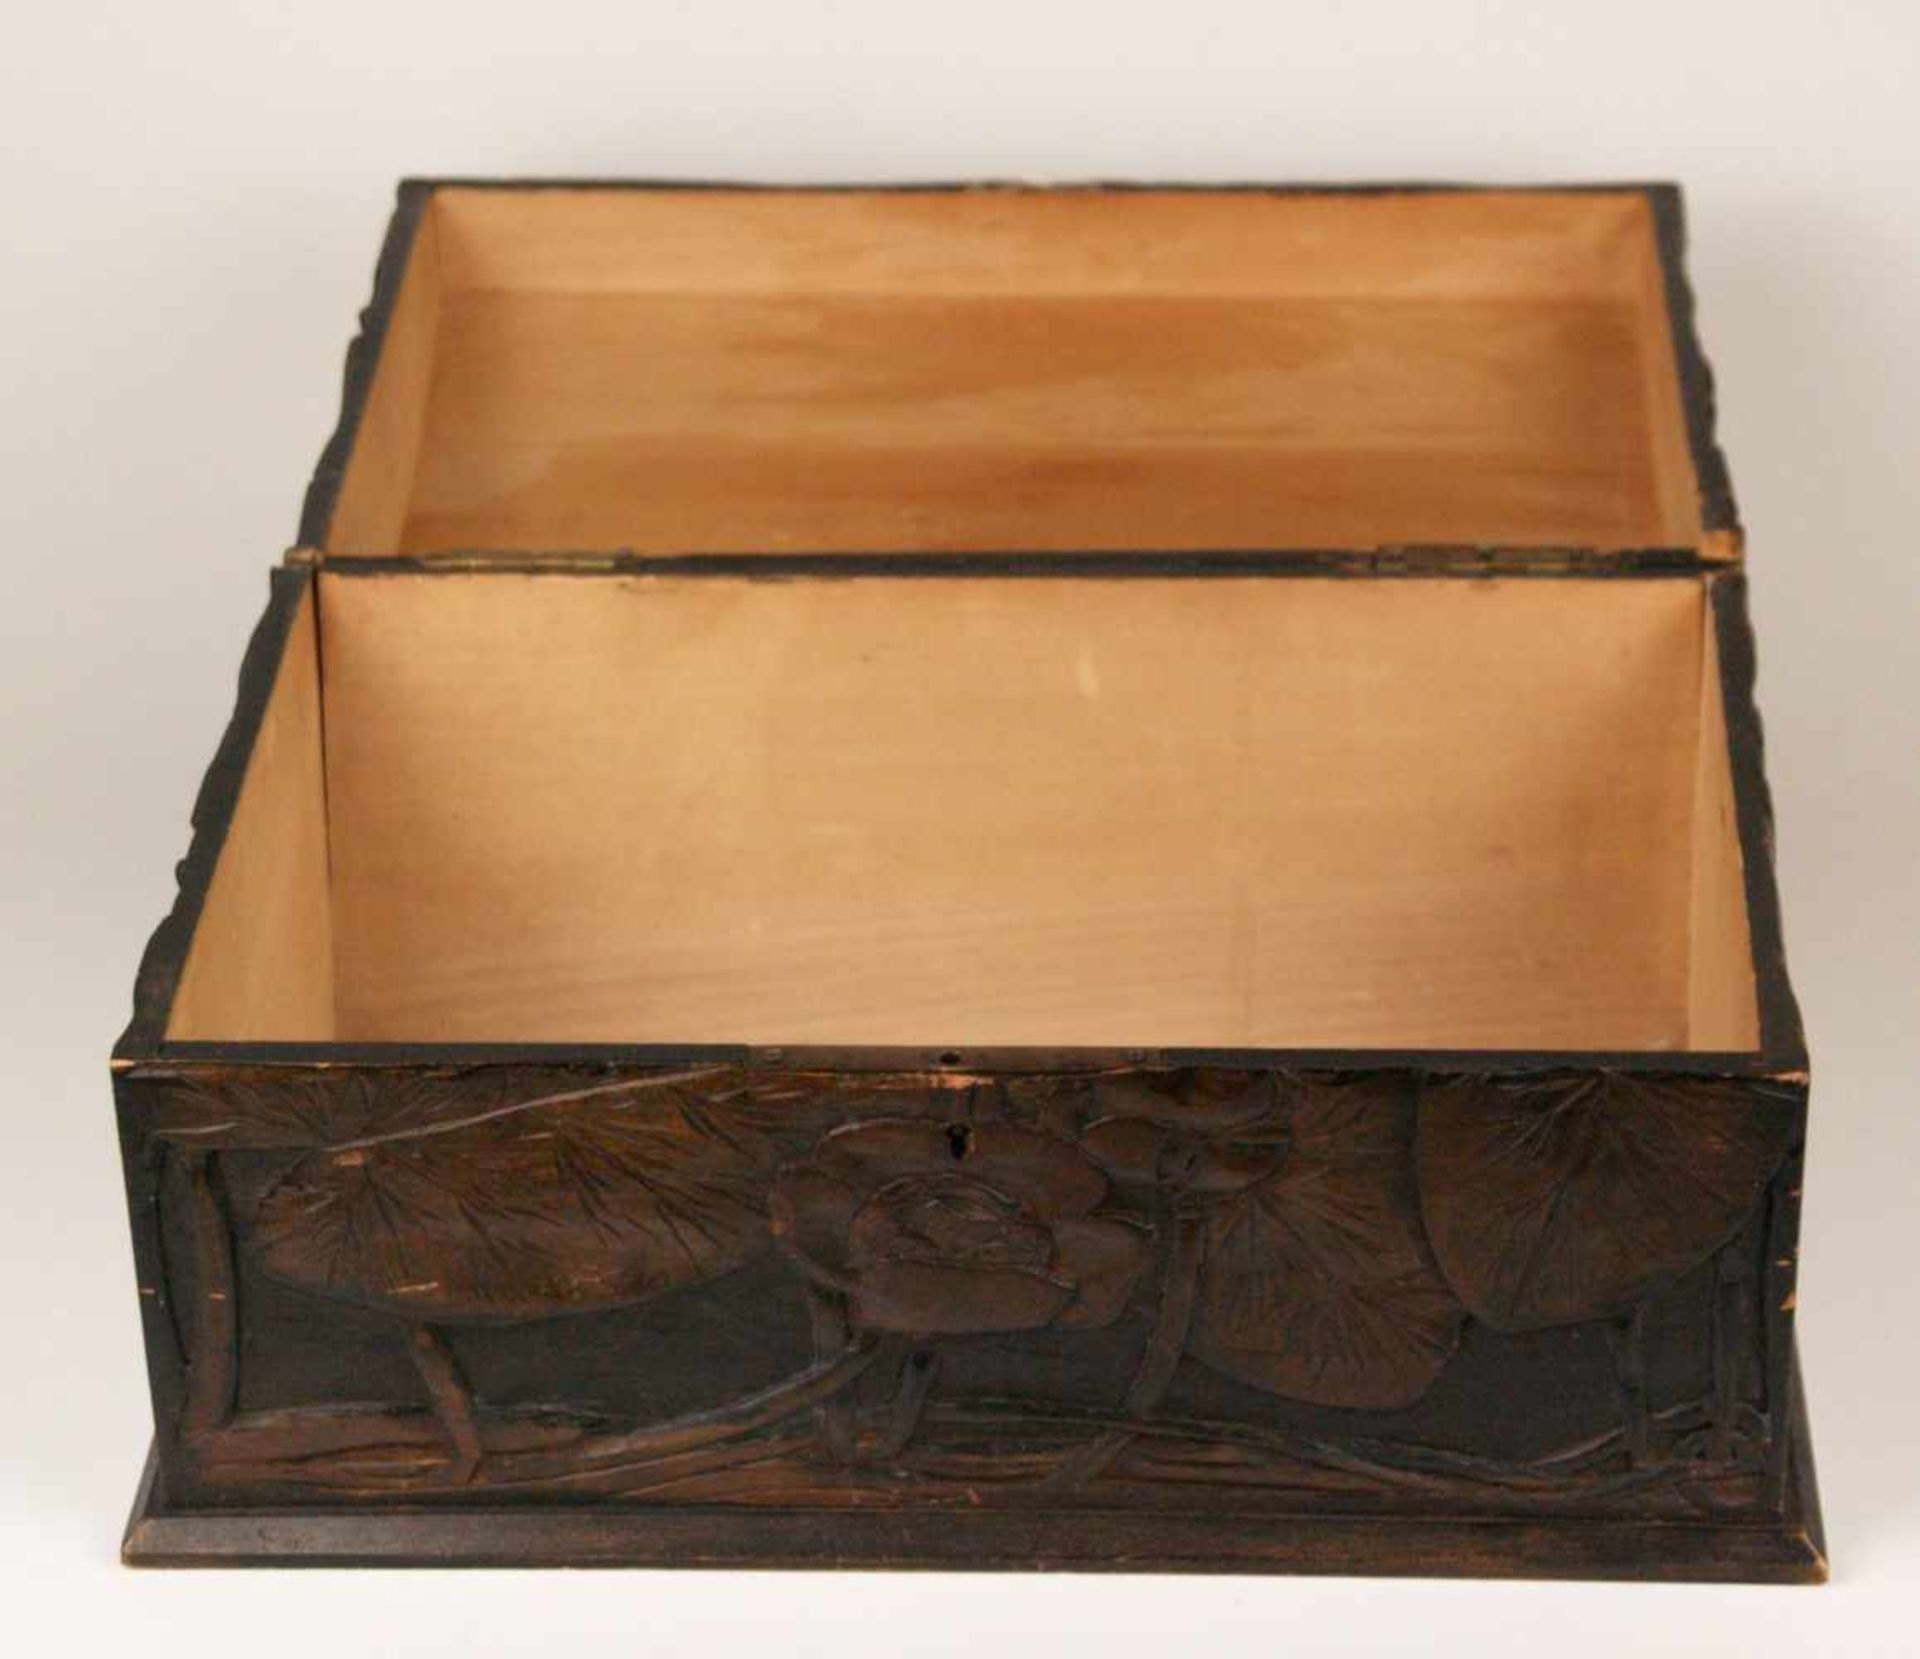 Holzkasten - rechteckiger Korpus, außen braun bemalt, geschnitzter Lotosblumen Dekor, - Bild 6 aus 10